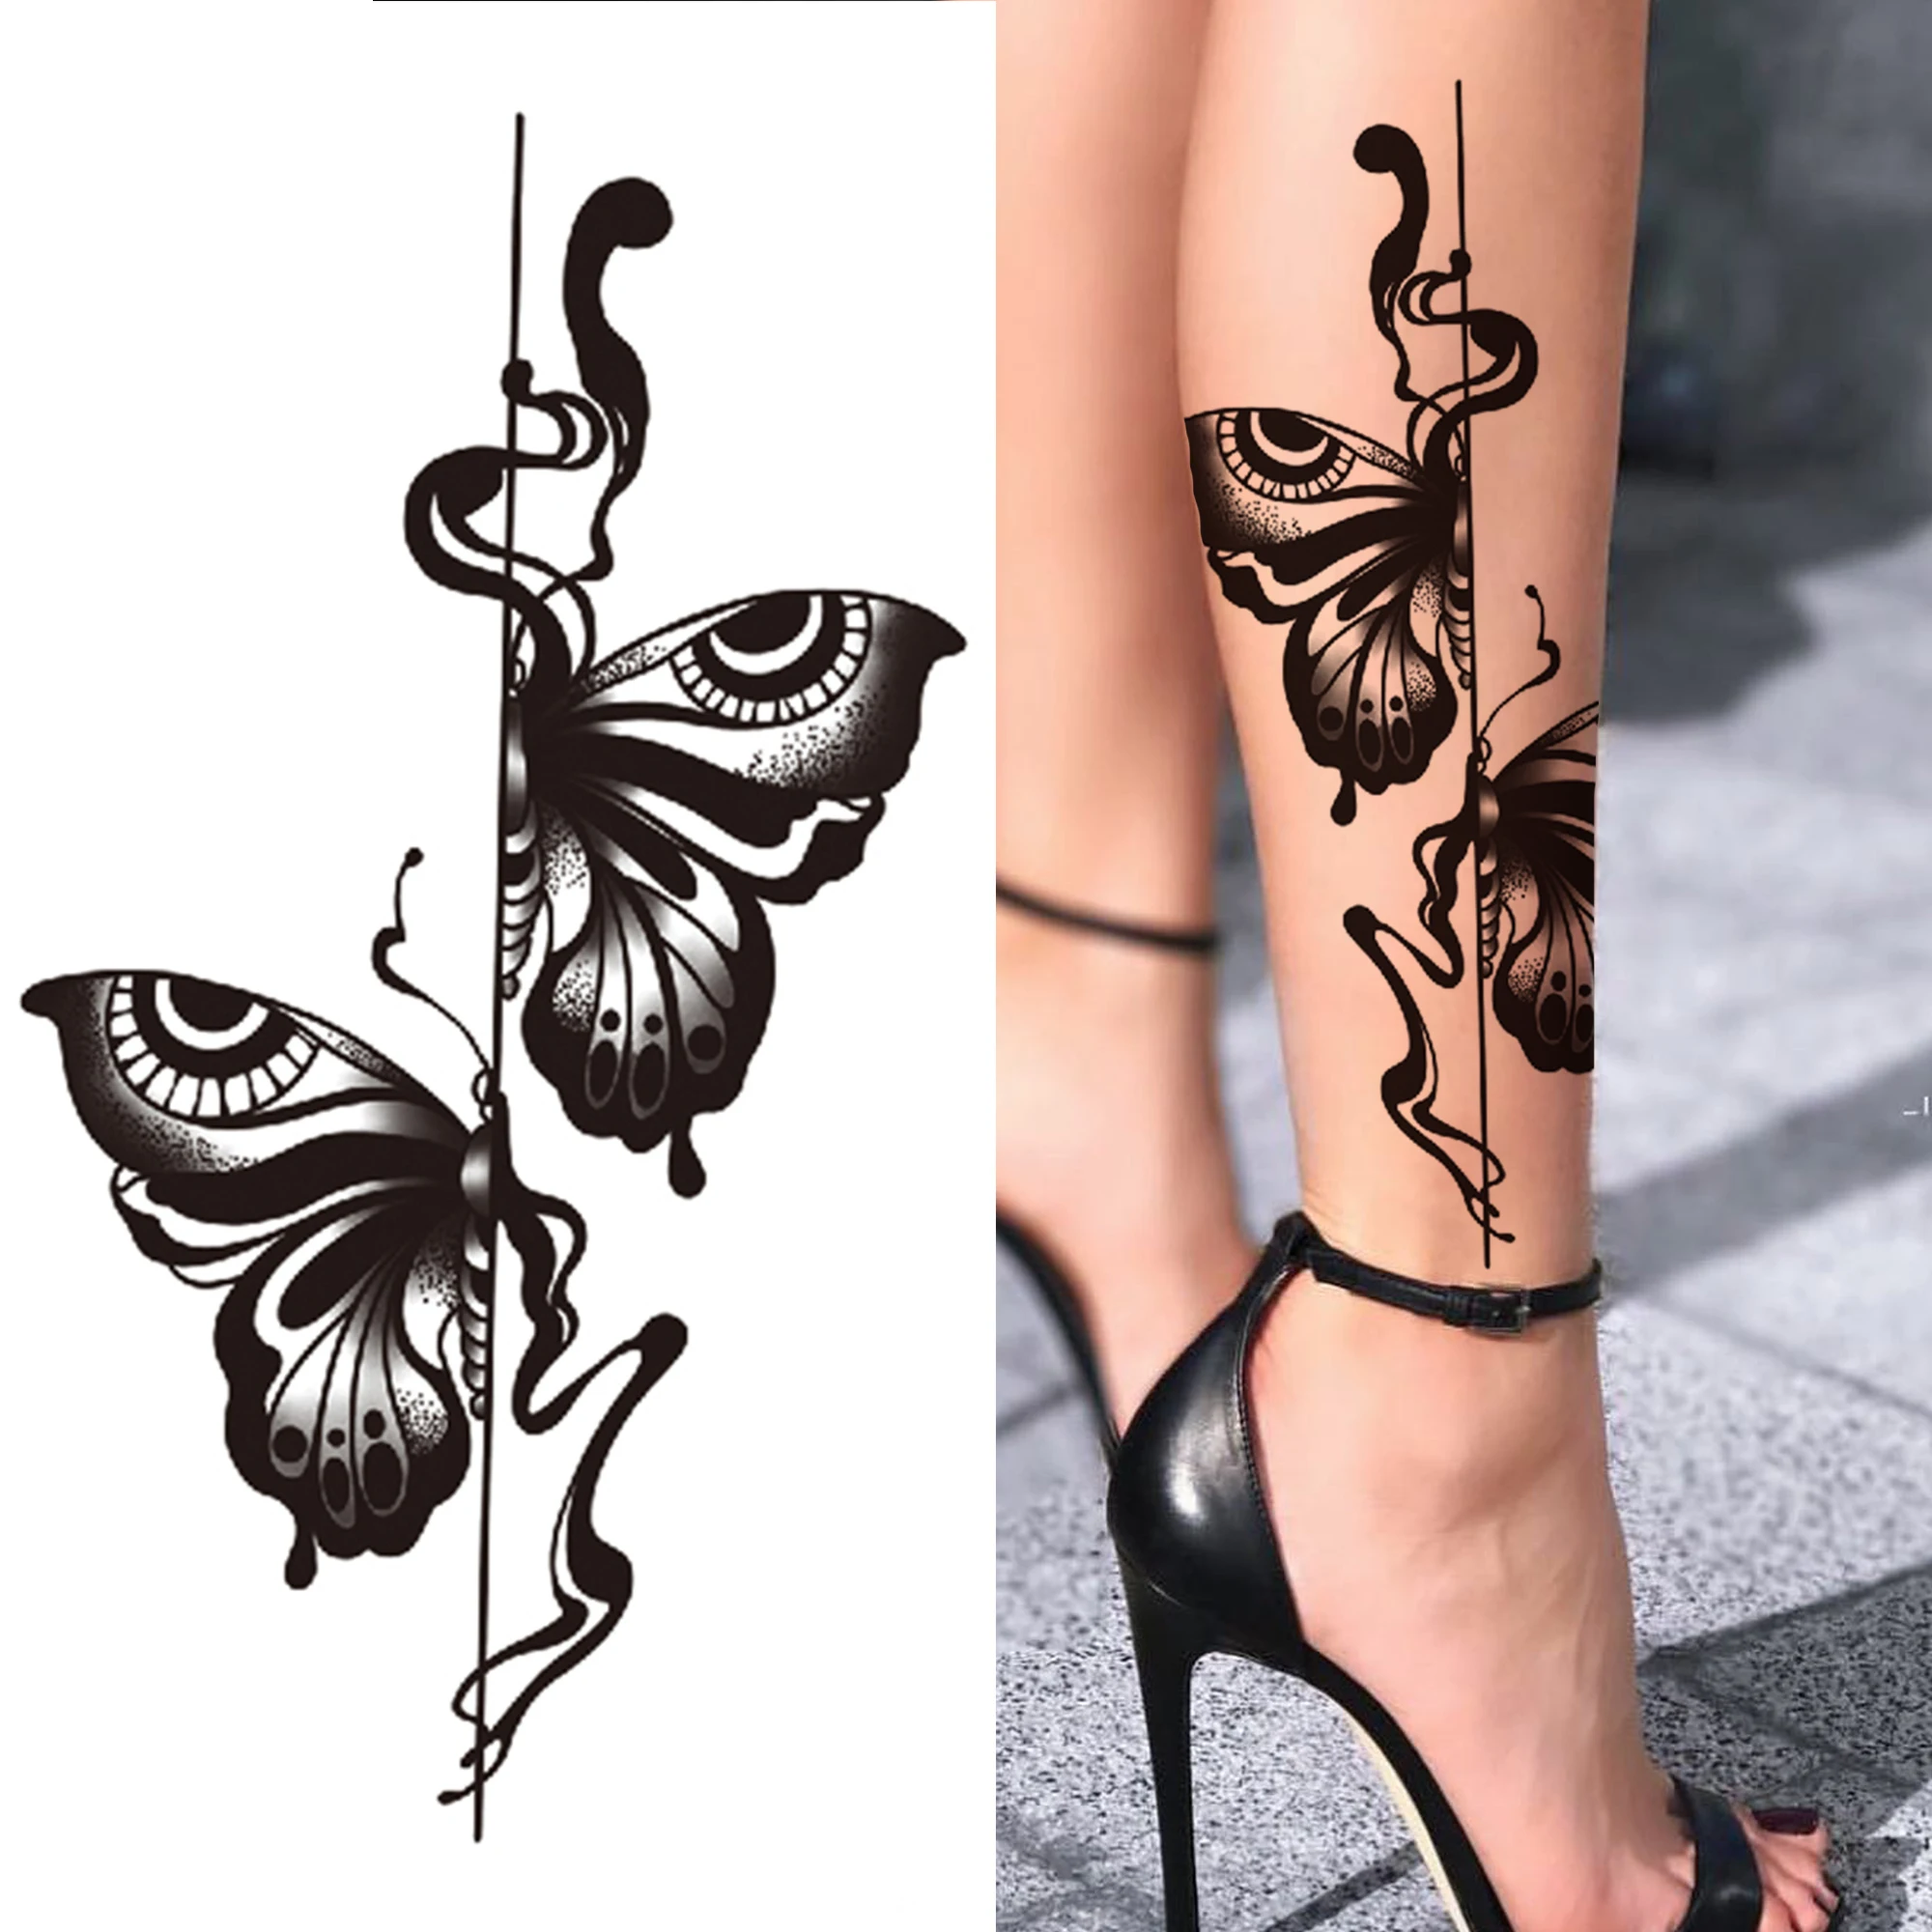 Koruna lev kříž dočasný tattoos pro muži ženy tygr běs růže les falešná tattoos předloktí stehno polovina rukáv tatoos nálepky